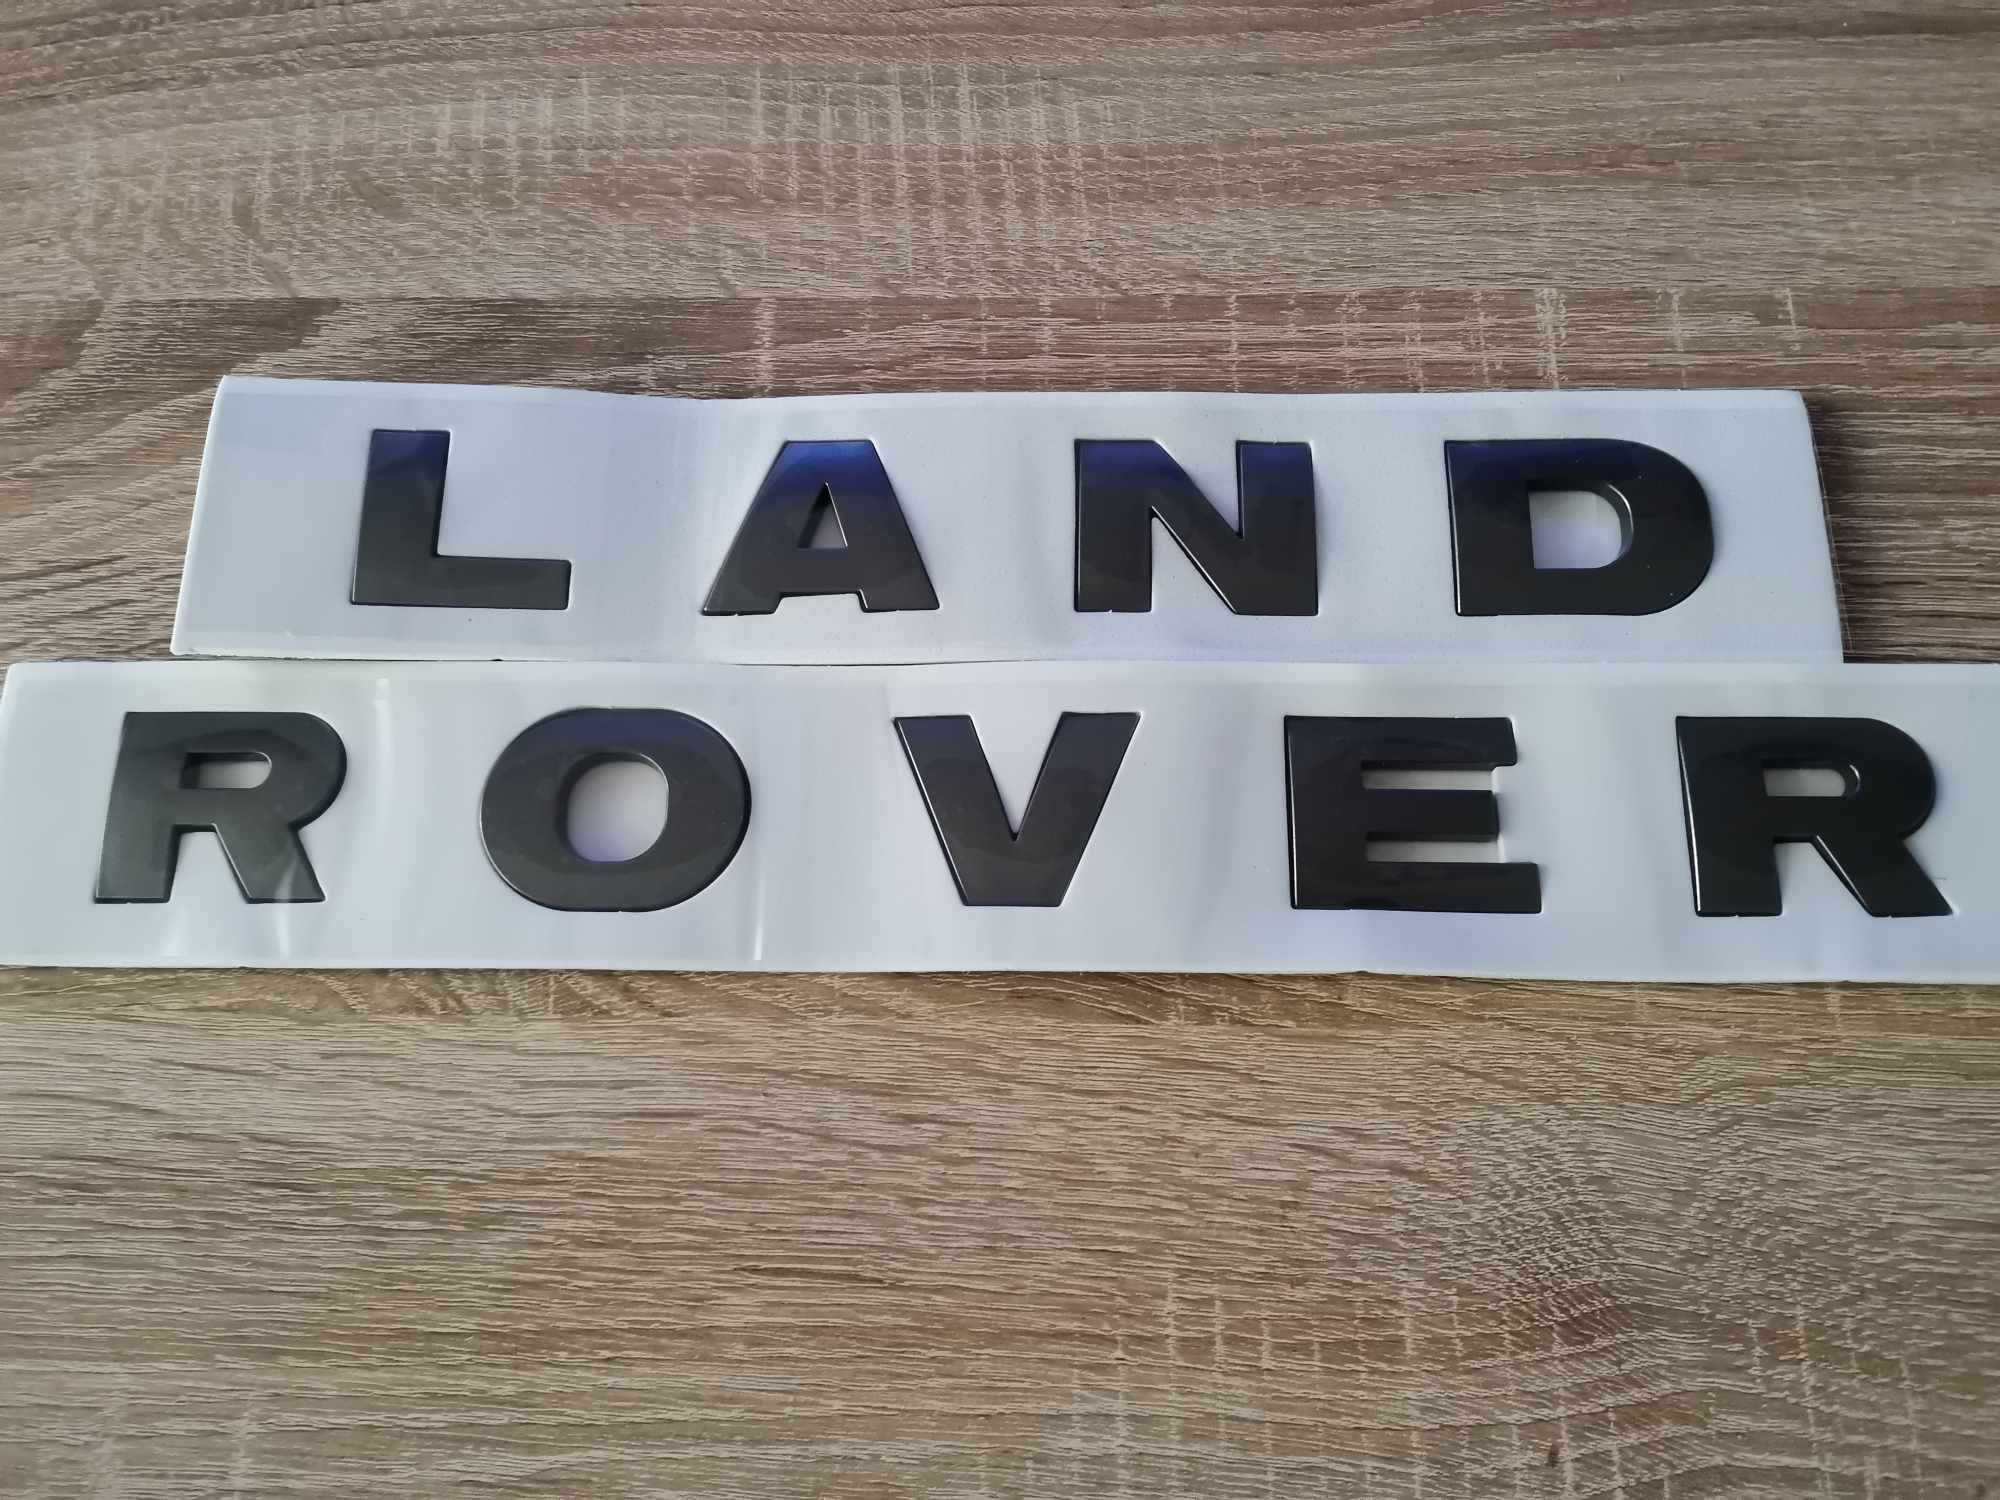 Емблеми надписи за Land Rover Ленд Роувър